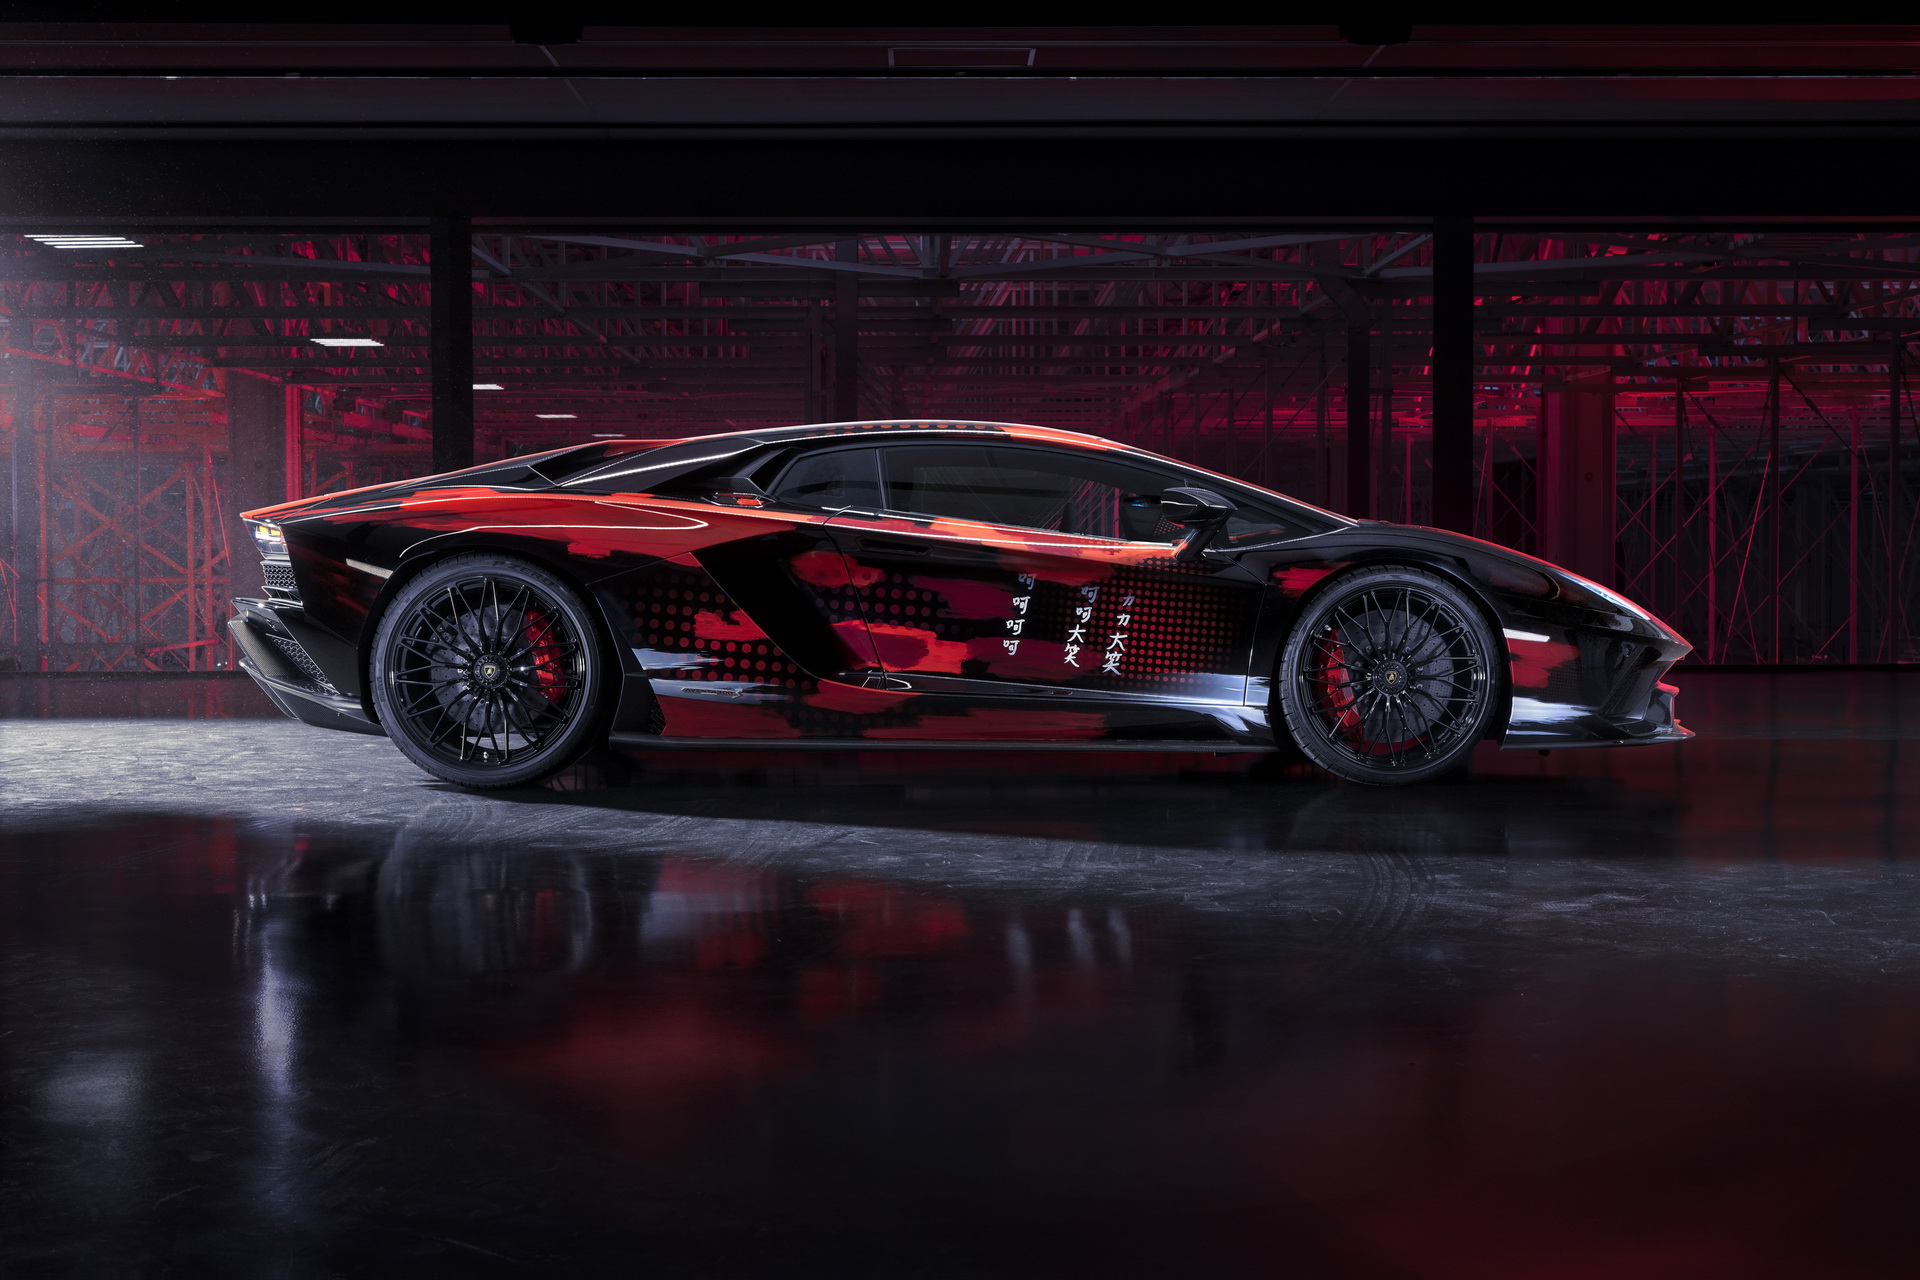 Bespoke Lamborghini Aventador S Gets New Attire From Fashion Designer ...